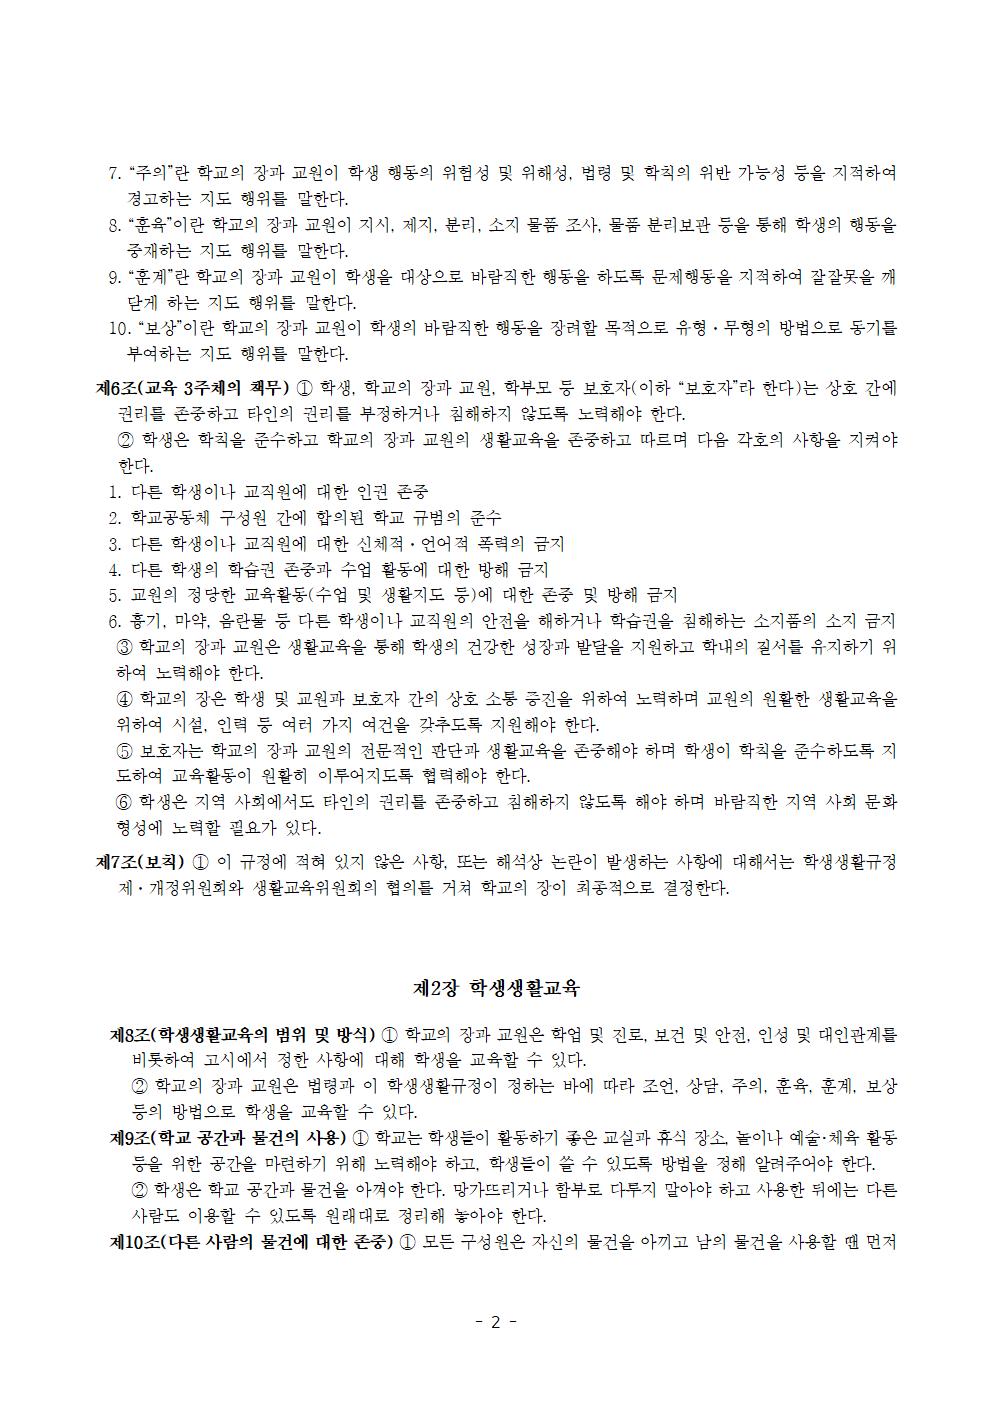 전주효천초등학교 학생의 학교생활에 관한 규정(전부개정, 23.12.22. 공포)002